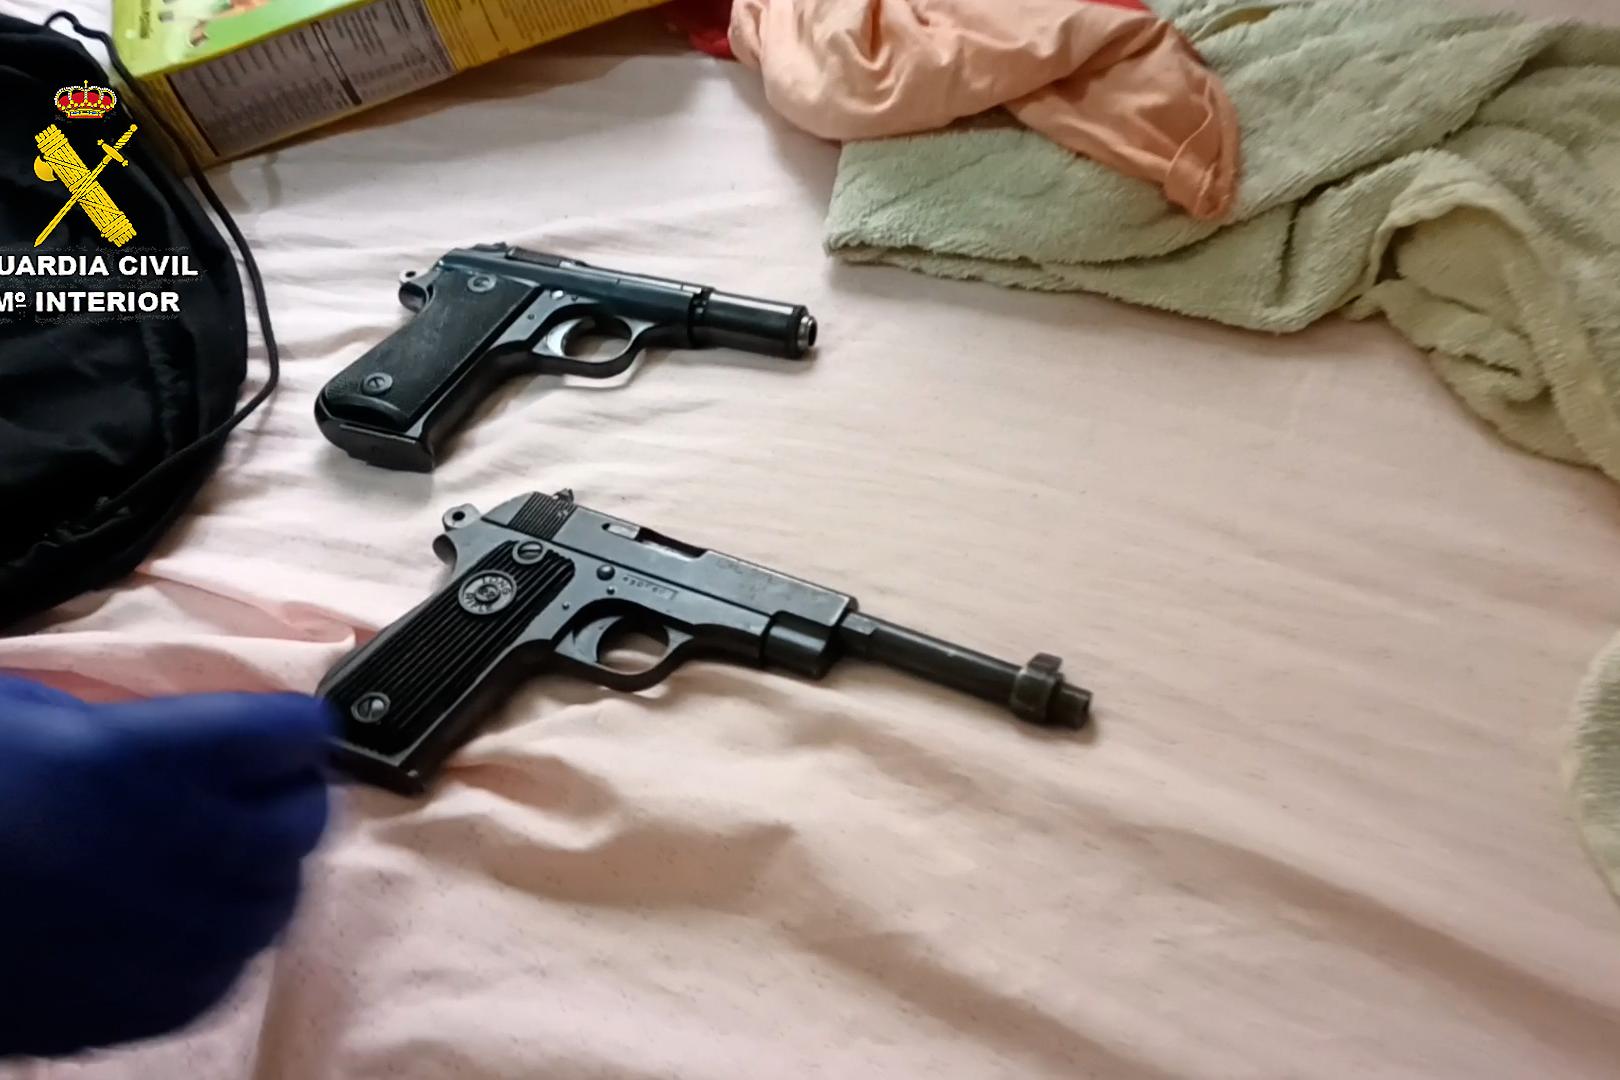 Imagen de las dos armas de fuego encontradas en uno de los registros por los agentes de la Guardia Civil